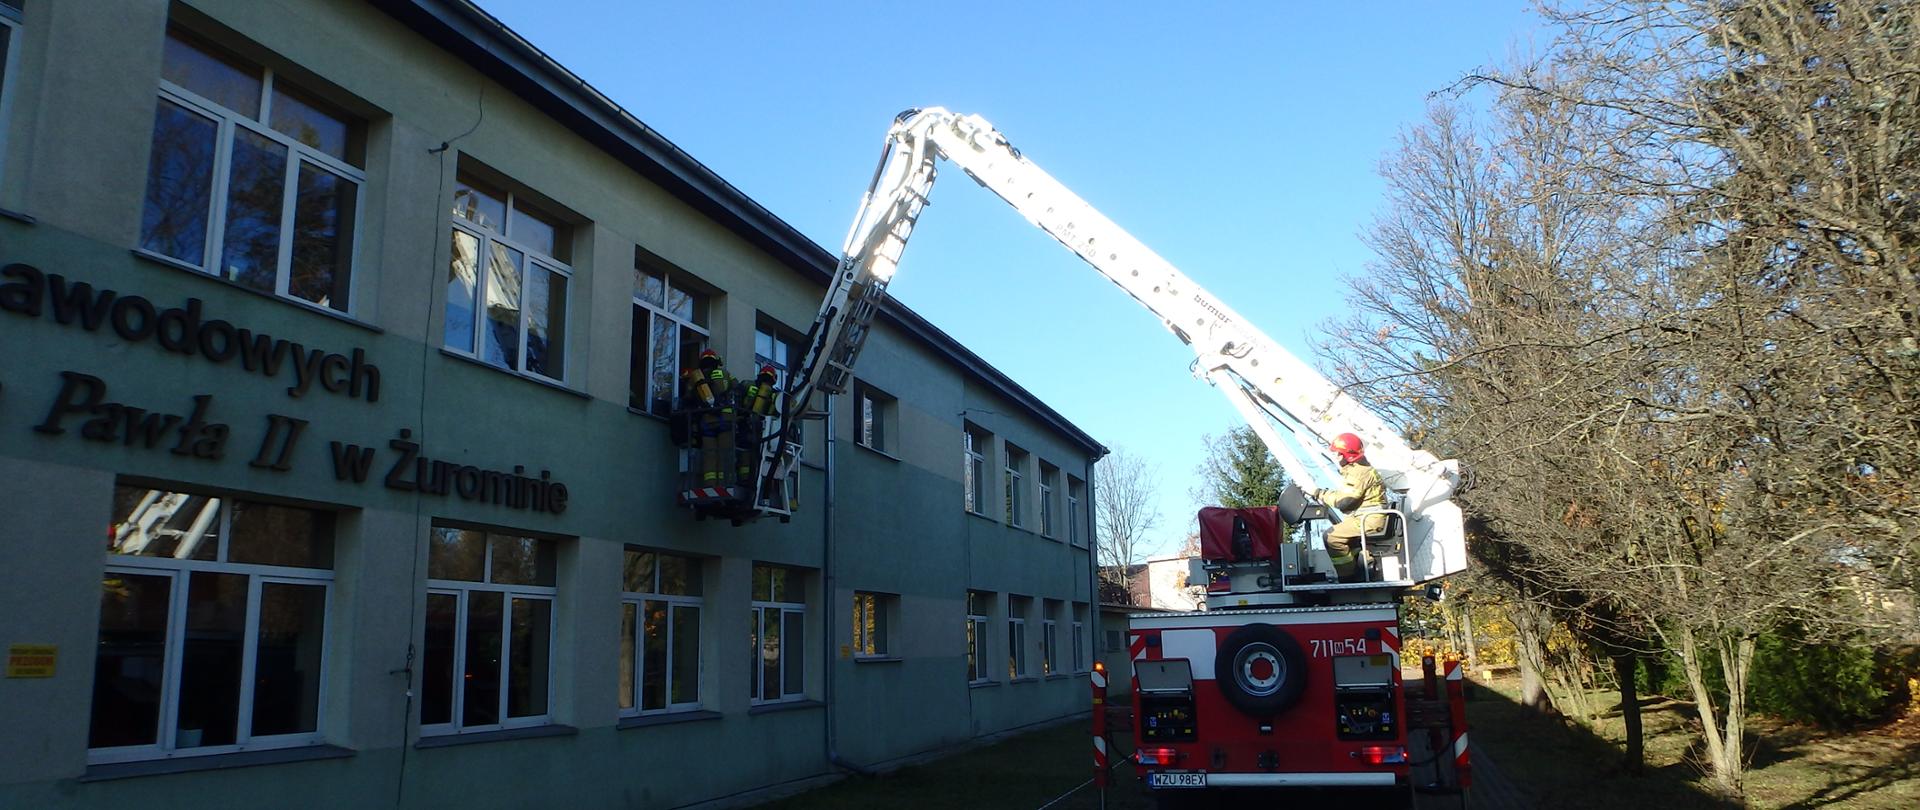 Przed budynkiem szkoły stoi rozstawiony samochód ratowniczo- gaśniczy- podnośnik, którym operuje jeden ze strażaków. Kosz podnośnika podniesiony jest na wysokości okna na piętrze budynku. W koszu znajduje się dwóch strażaków w umundurowaniu specjalnym.